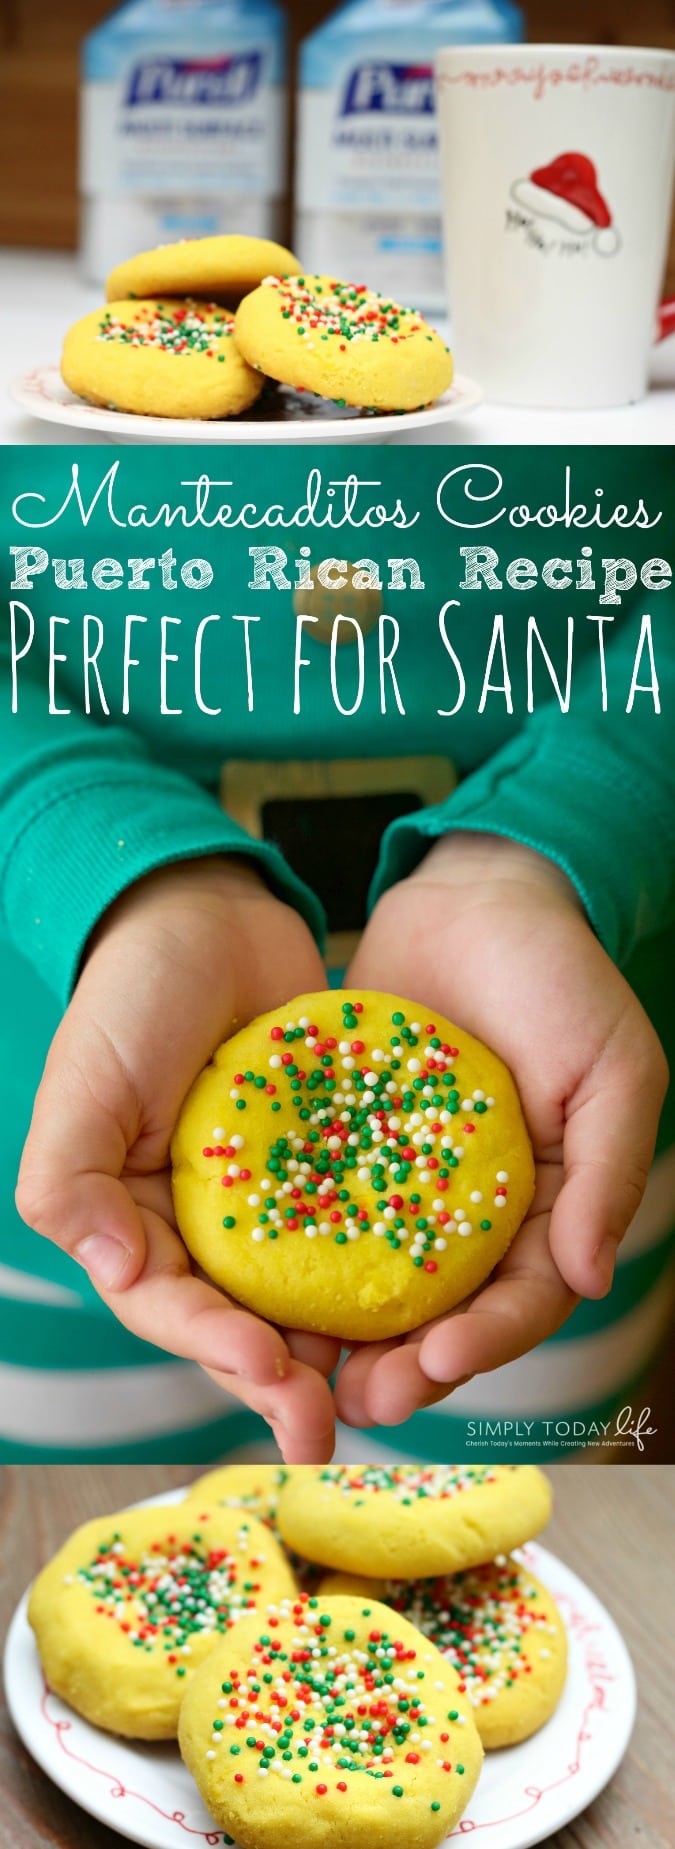 Mantecaditos Puerto Rican Cookie Recipe Perfect for Santa - simplytodaylife.com